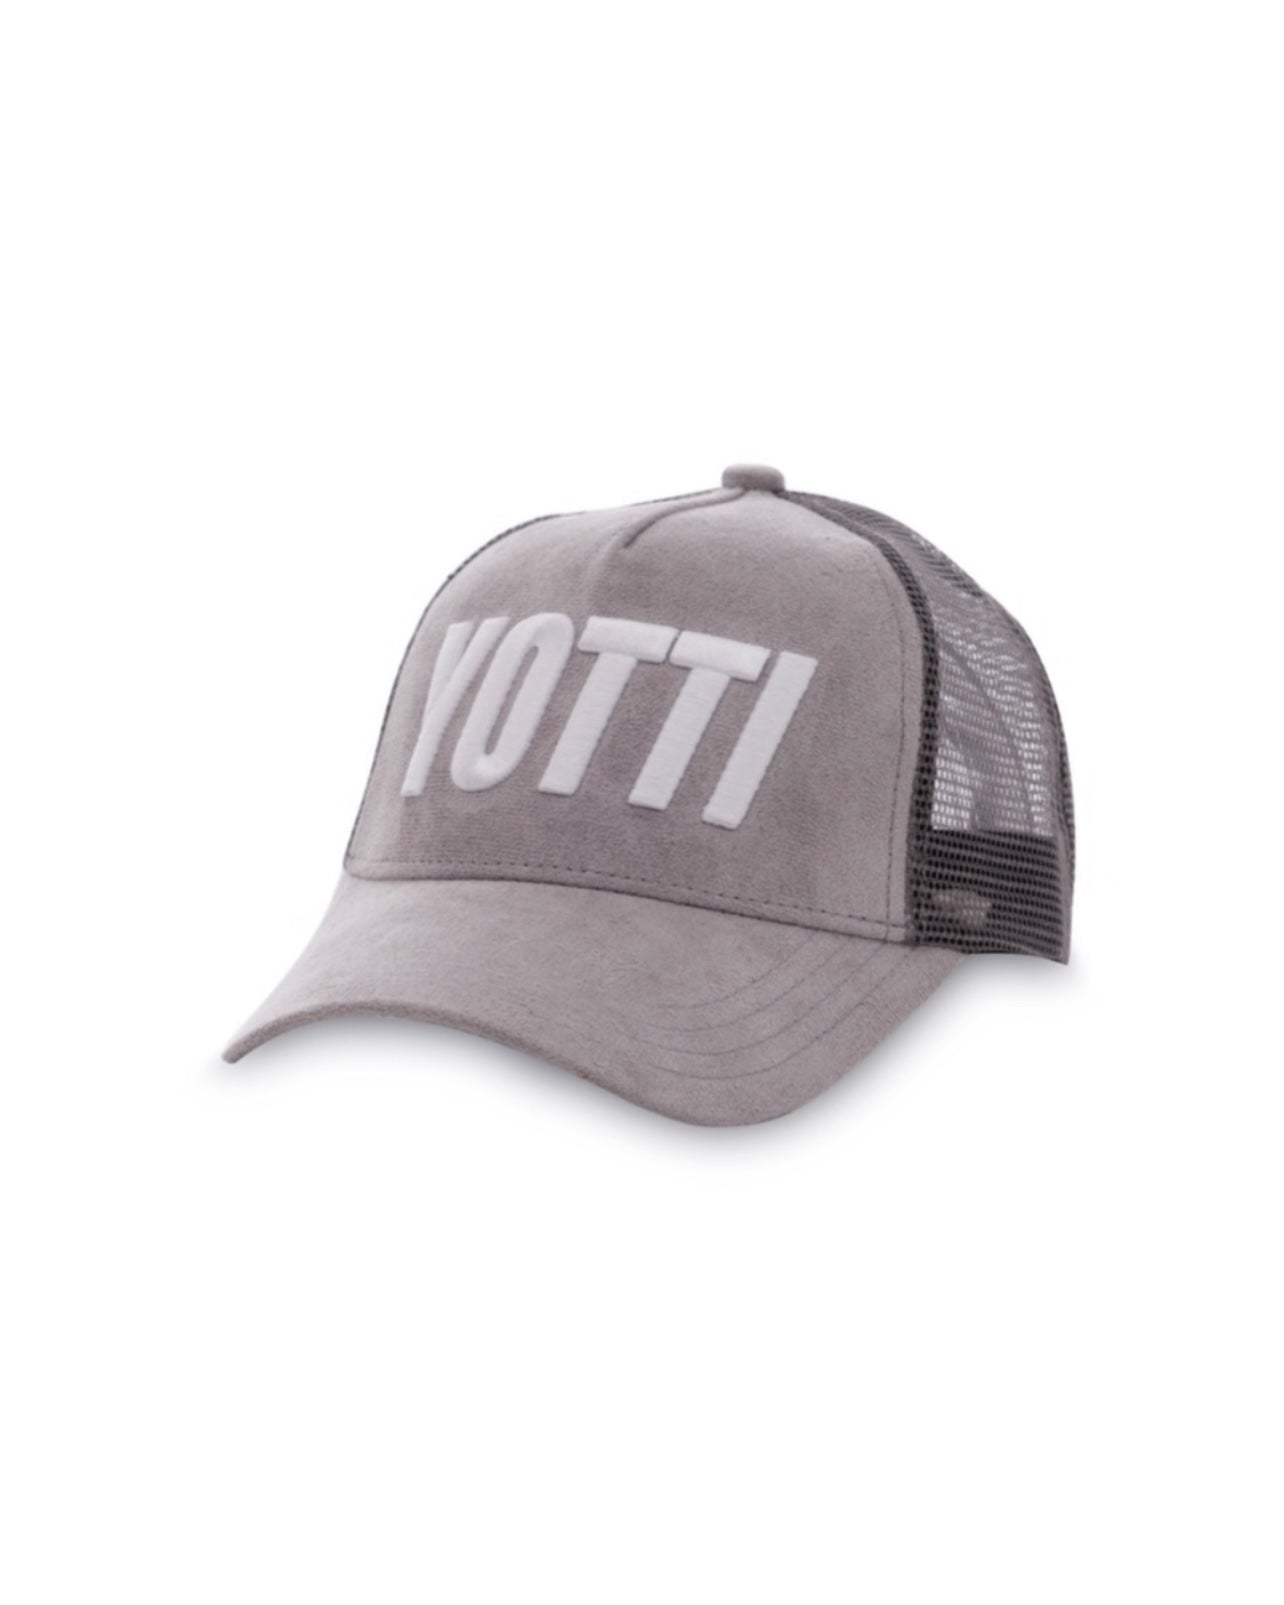 Yotti Logo Trucker | Grey Suede